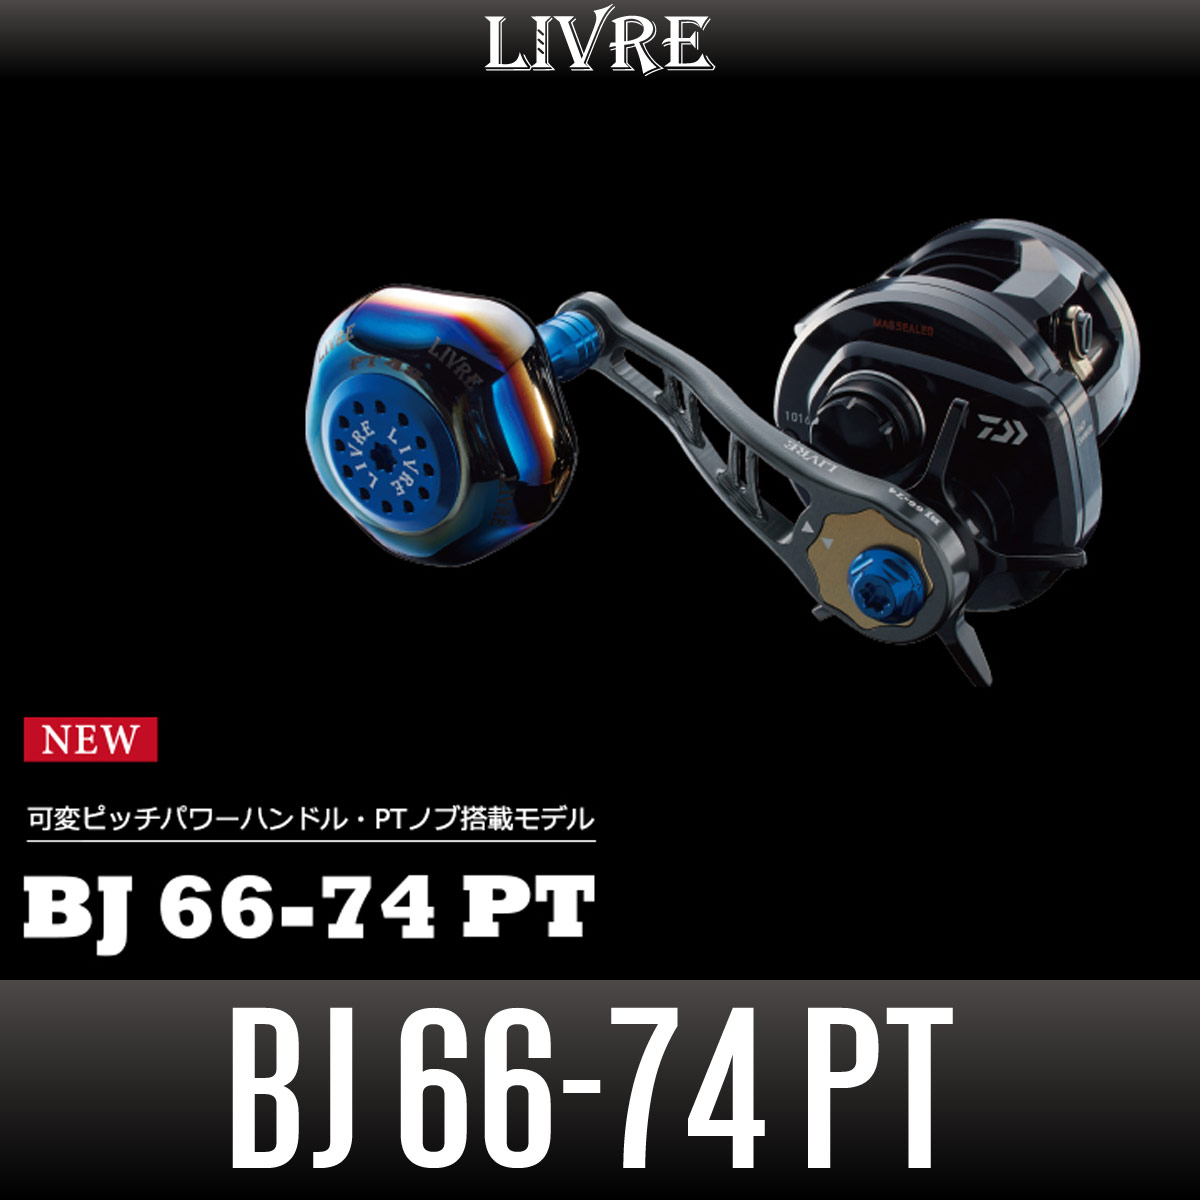 リブレ(LIVRE) 10469 BJ 75-83 PT ダイワ (B2) チタン ブルー